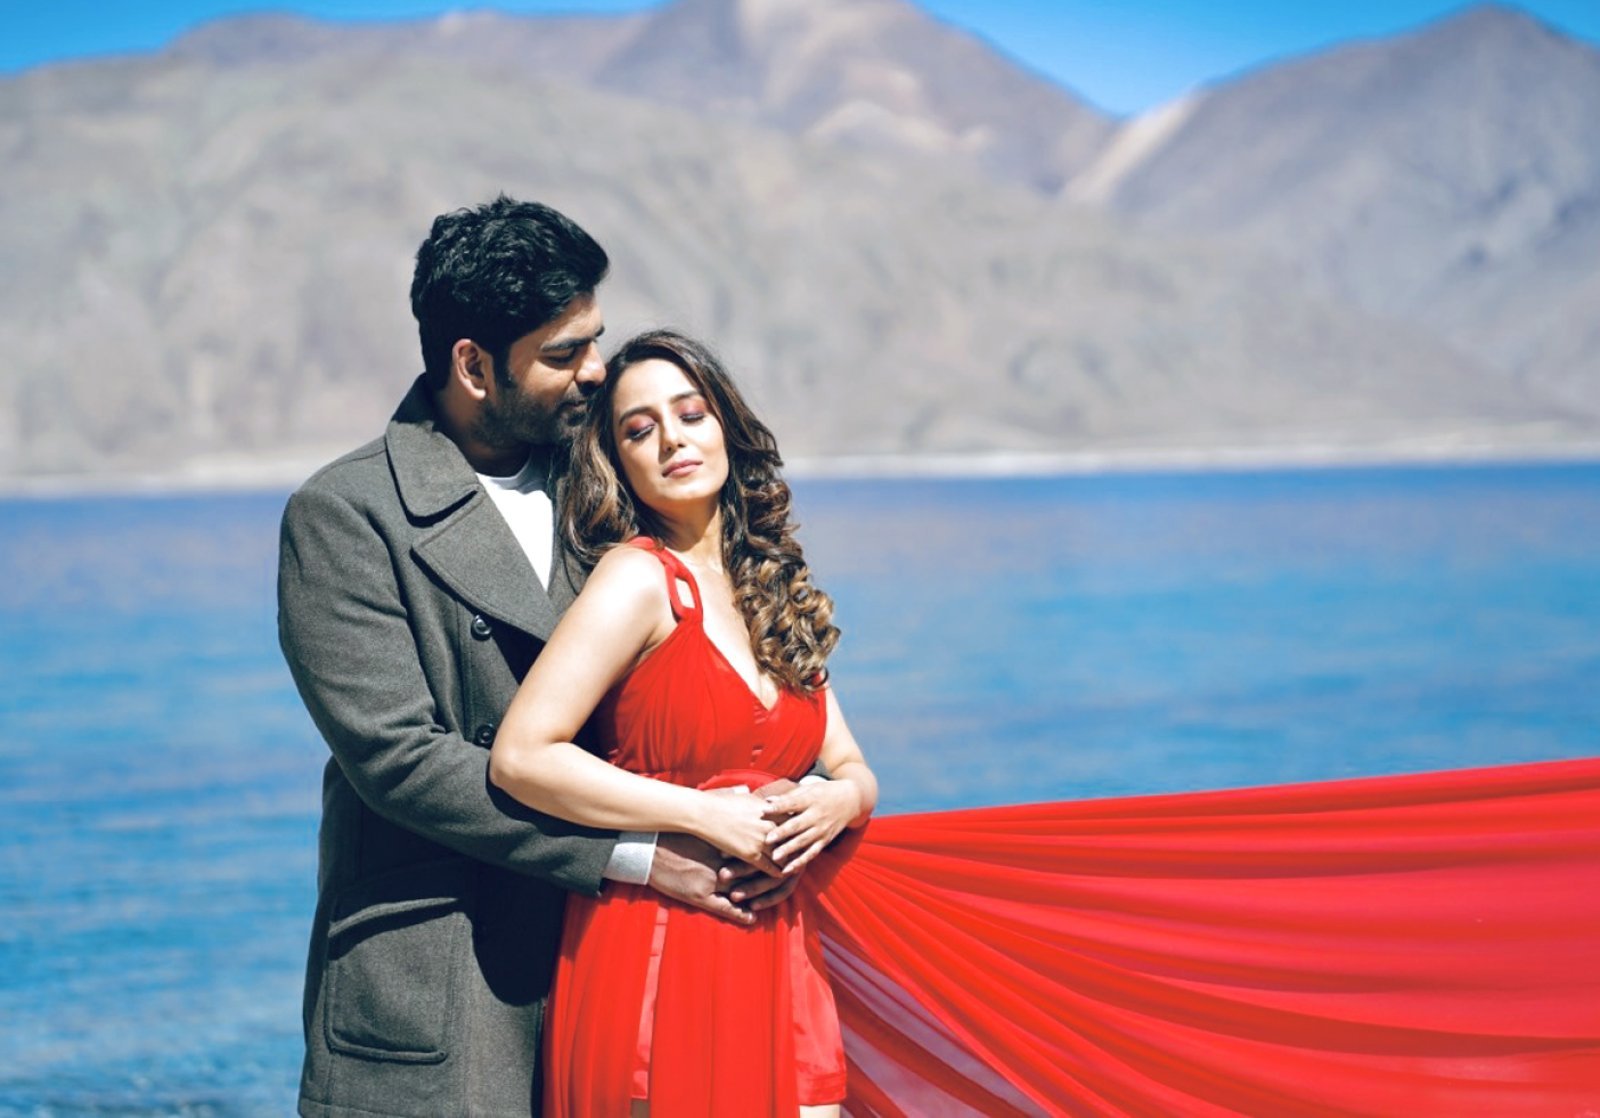 शाहरुख खान के गीत 'गेरुआ' की याद दिलाता है शौर्य मेहता और सृष्टि रोड़े का म्यूजिक वीडियो 'दिल ये दिलबरो'